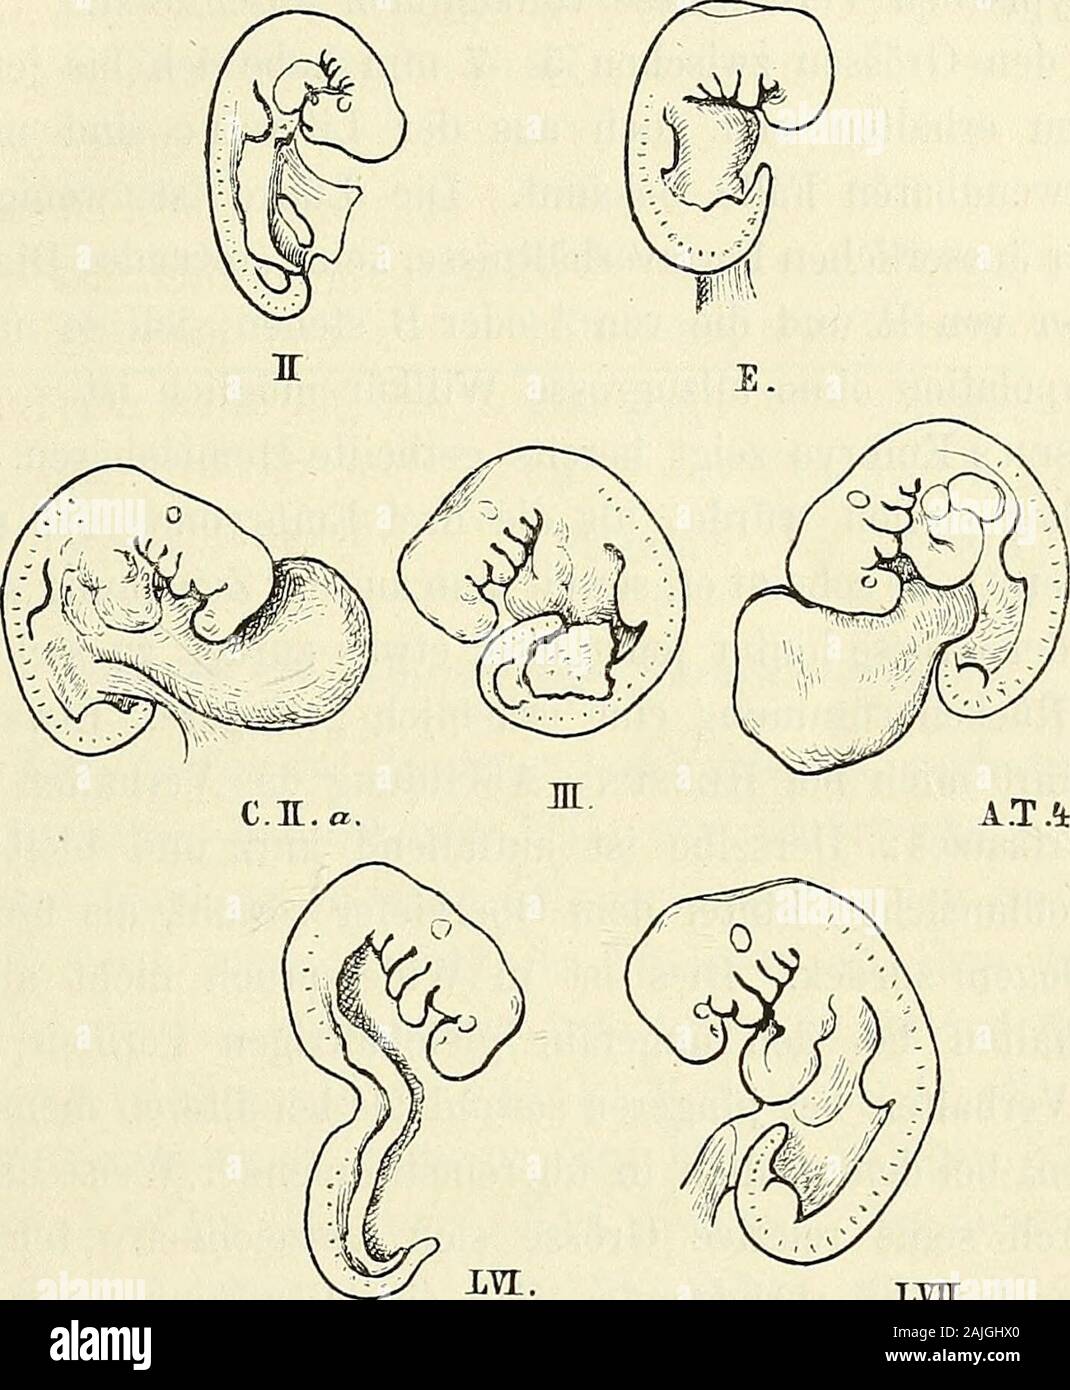 Anatomie menschlicher Embryonen . hleife ist bereits caudalwärts gerichtet. Die Nabelblase istzwar an ihrer Wurzel eingeschnürt, indess noch in breiter Verbin-bindung mit dem Körper. Eine Leberanschwellung ist vorhanden,aber schwach hervortretend. Etwas älter als die drei eben besprochenen sind die Embryonen 1) Von Hensen und Ecker liegen directe Maassangaben (4 bez. 4.5 mm),vom Embryo 4 von Allen Thomson eine 4 mm lange Figur in natürlicherGrösse vor. Der CosTssche Embryo, angeblich 15mal vergrössert, ist 6 cmlang, vfas auch 4 mm natürliche Länge ergeben würde. Man kann sich aufdie CosTEschen Stock Photo